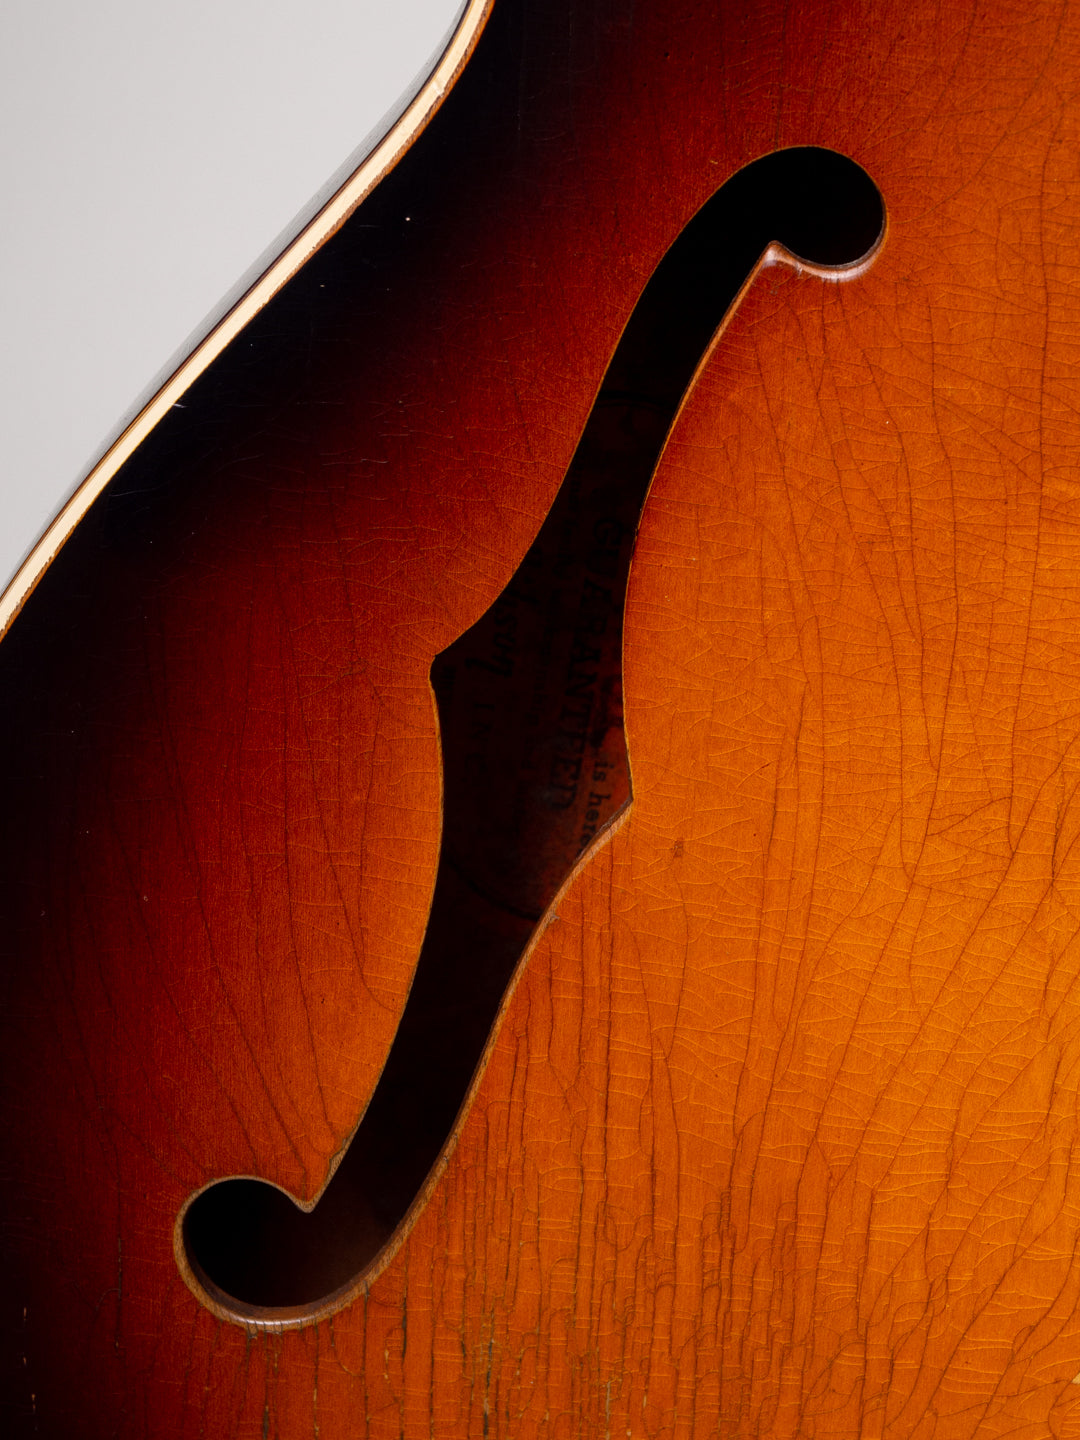 1967 Gibson ES-335TD